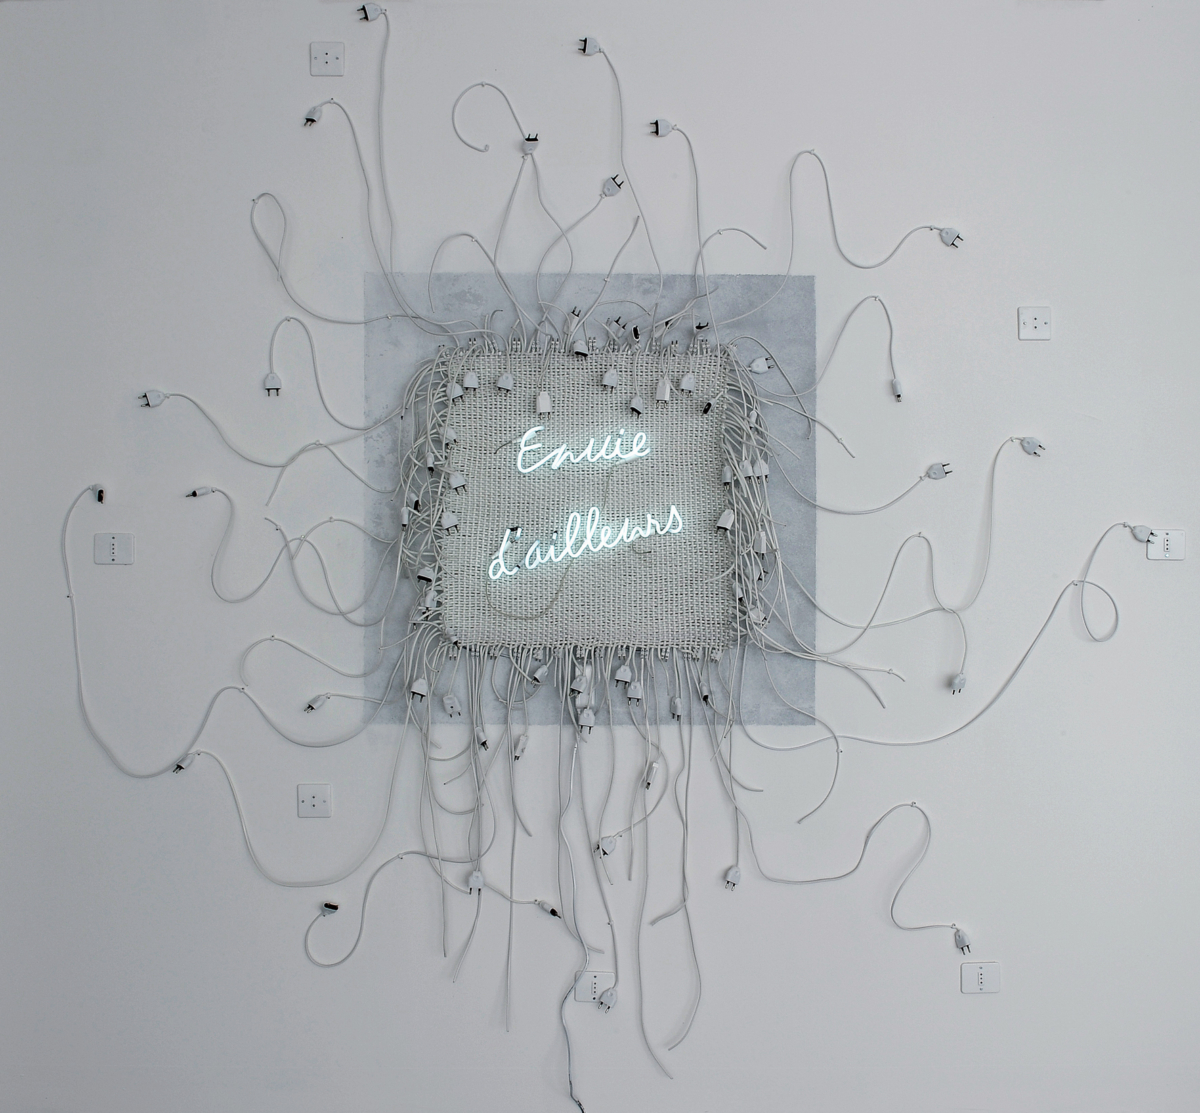 Envie d’ailleurs, 2010 Câbles et prises électriques, néon 260 x 253 cm ©Naji Kamouche